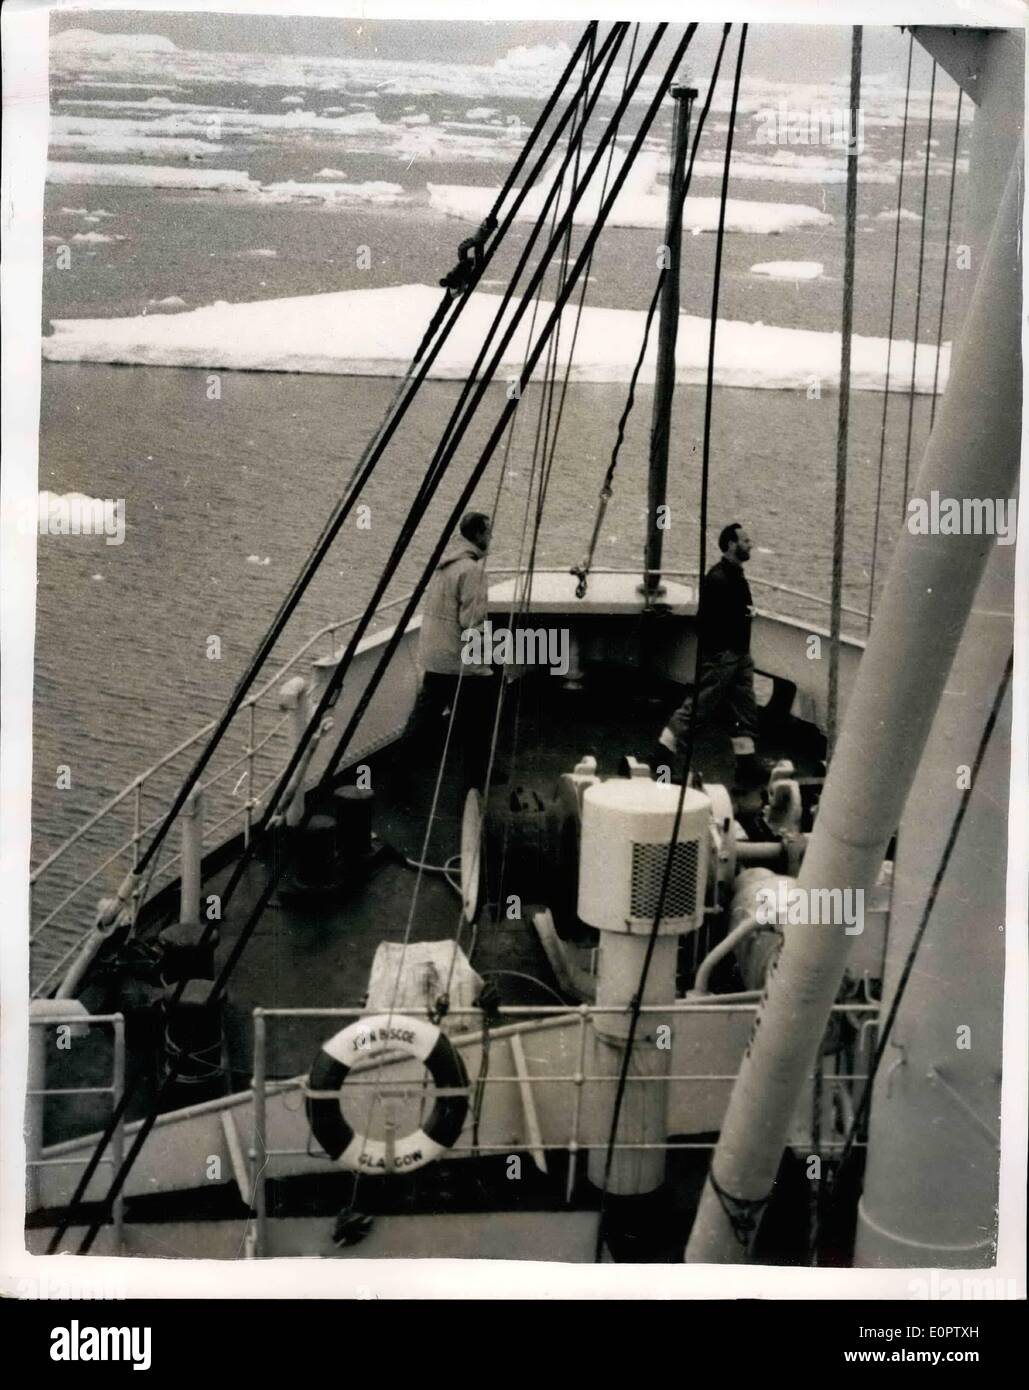 01 janvier 1957, duc d'Édimbourg - Visite le ''John Biscoe'' Falkland Islands dependencies : Photo montre S.A.R. le duc d'Édimbourg (à gauche) vu à bord de la Falkland Islands Dependencies Survey ship ''John Biscoe'' à la Terre de Graham au cours de sa récente tournée des mers du Sud. Banque D'Images